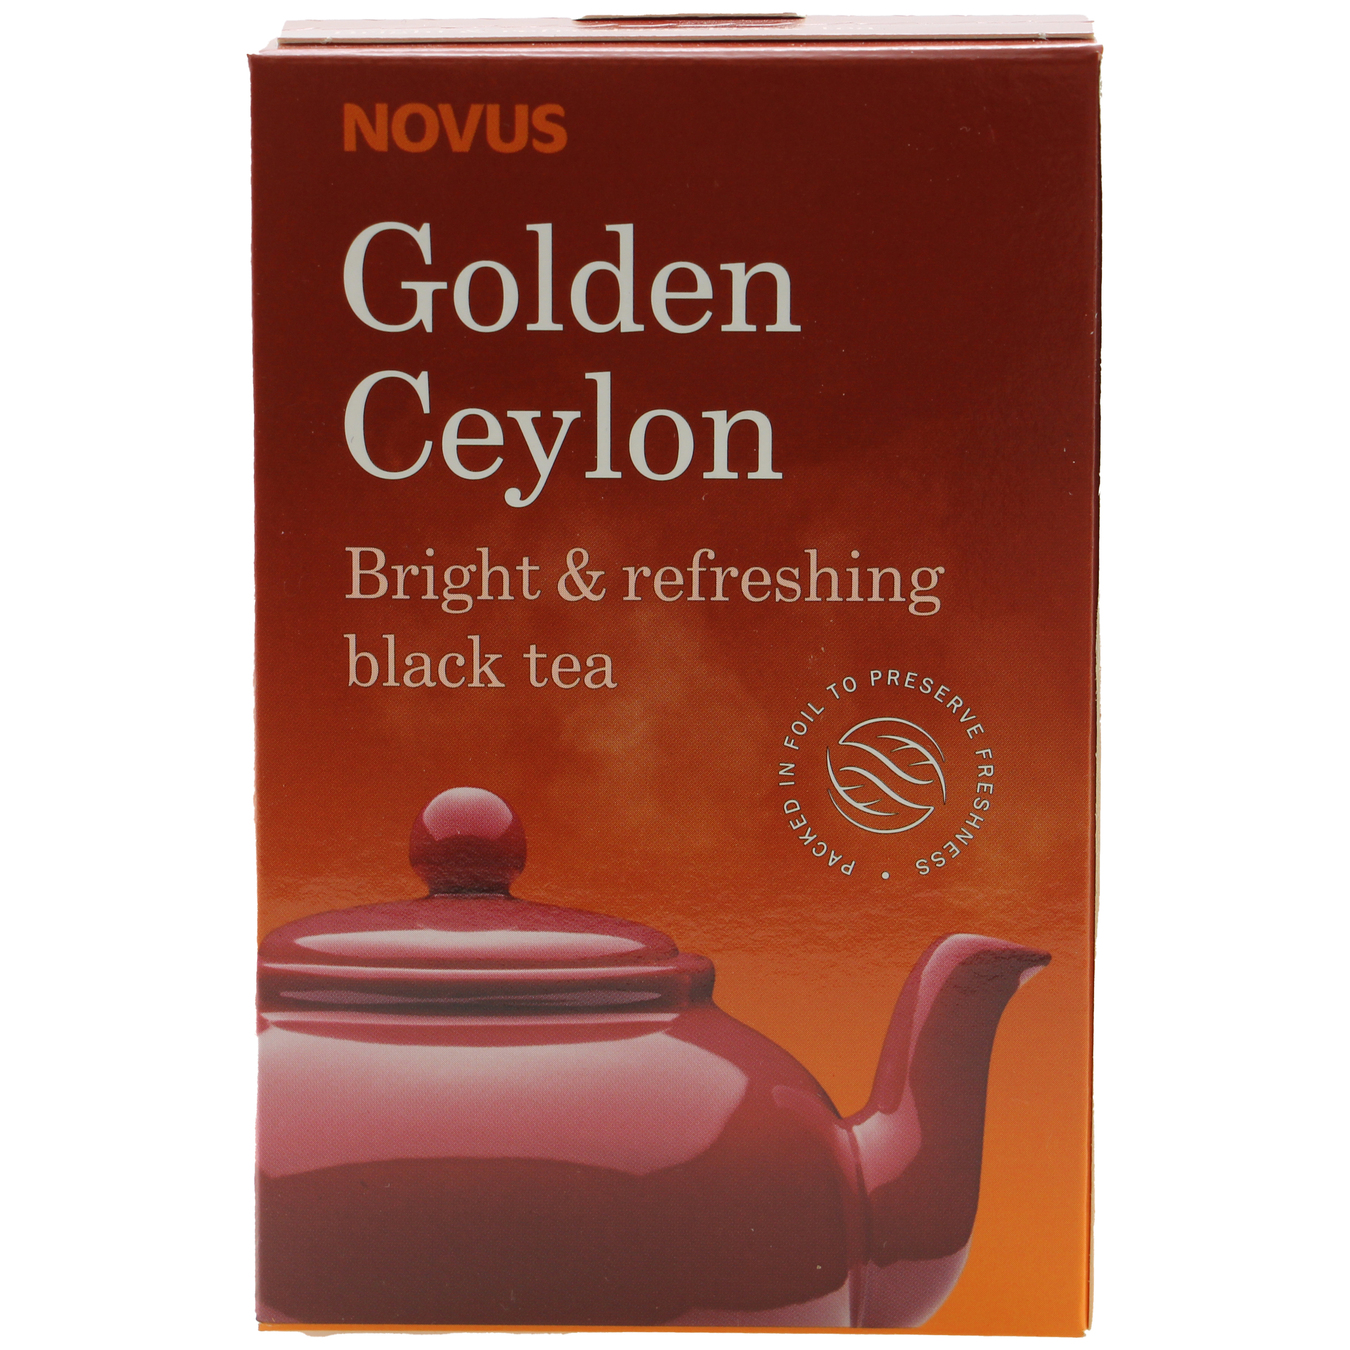 NOVUS Golden Ceylon Black Tea 100g